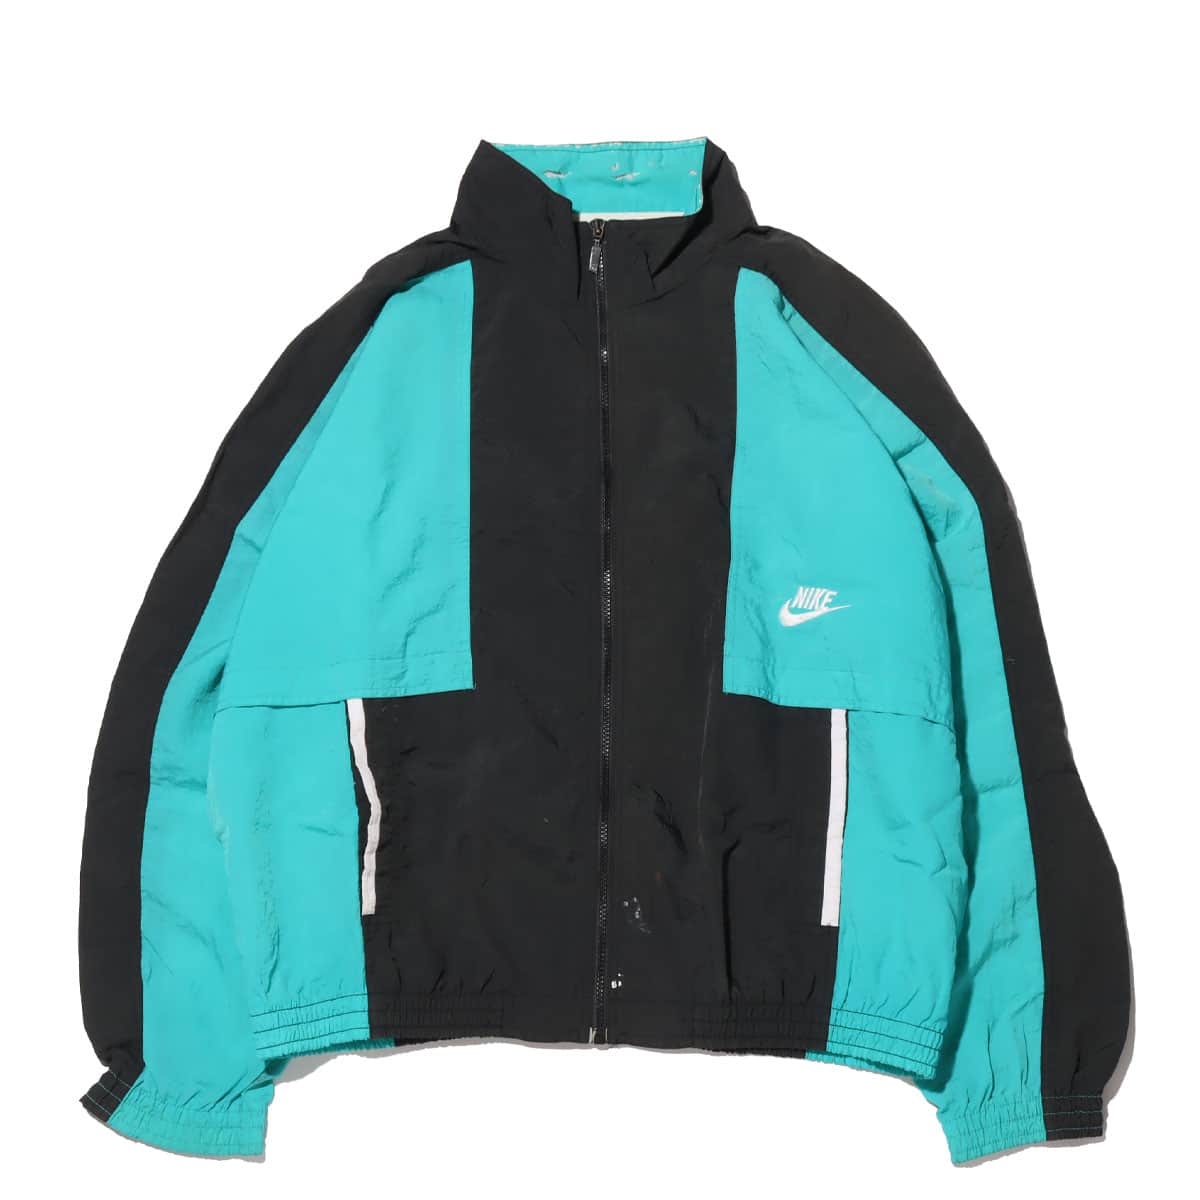 NIKE nylon jacket ナイロンジャケット (XL)